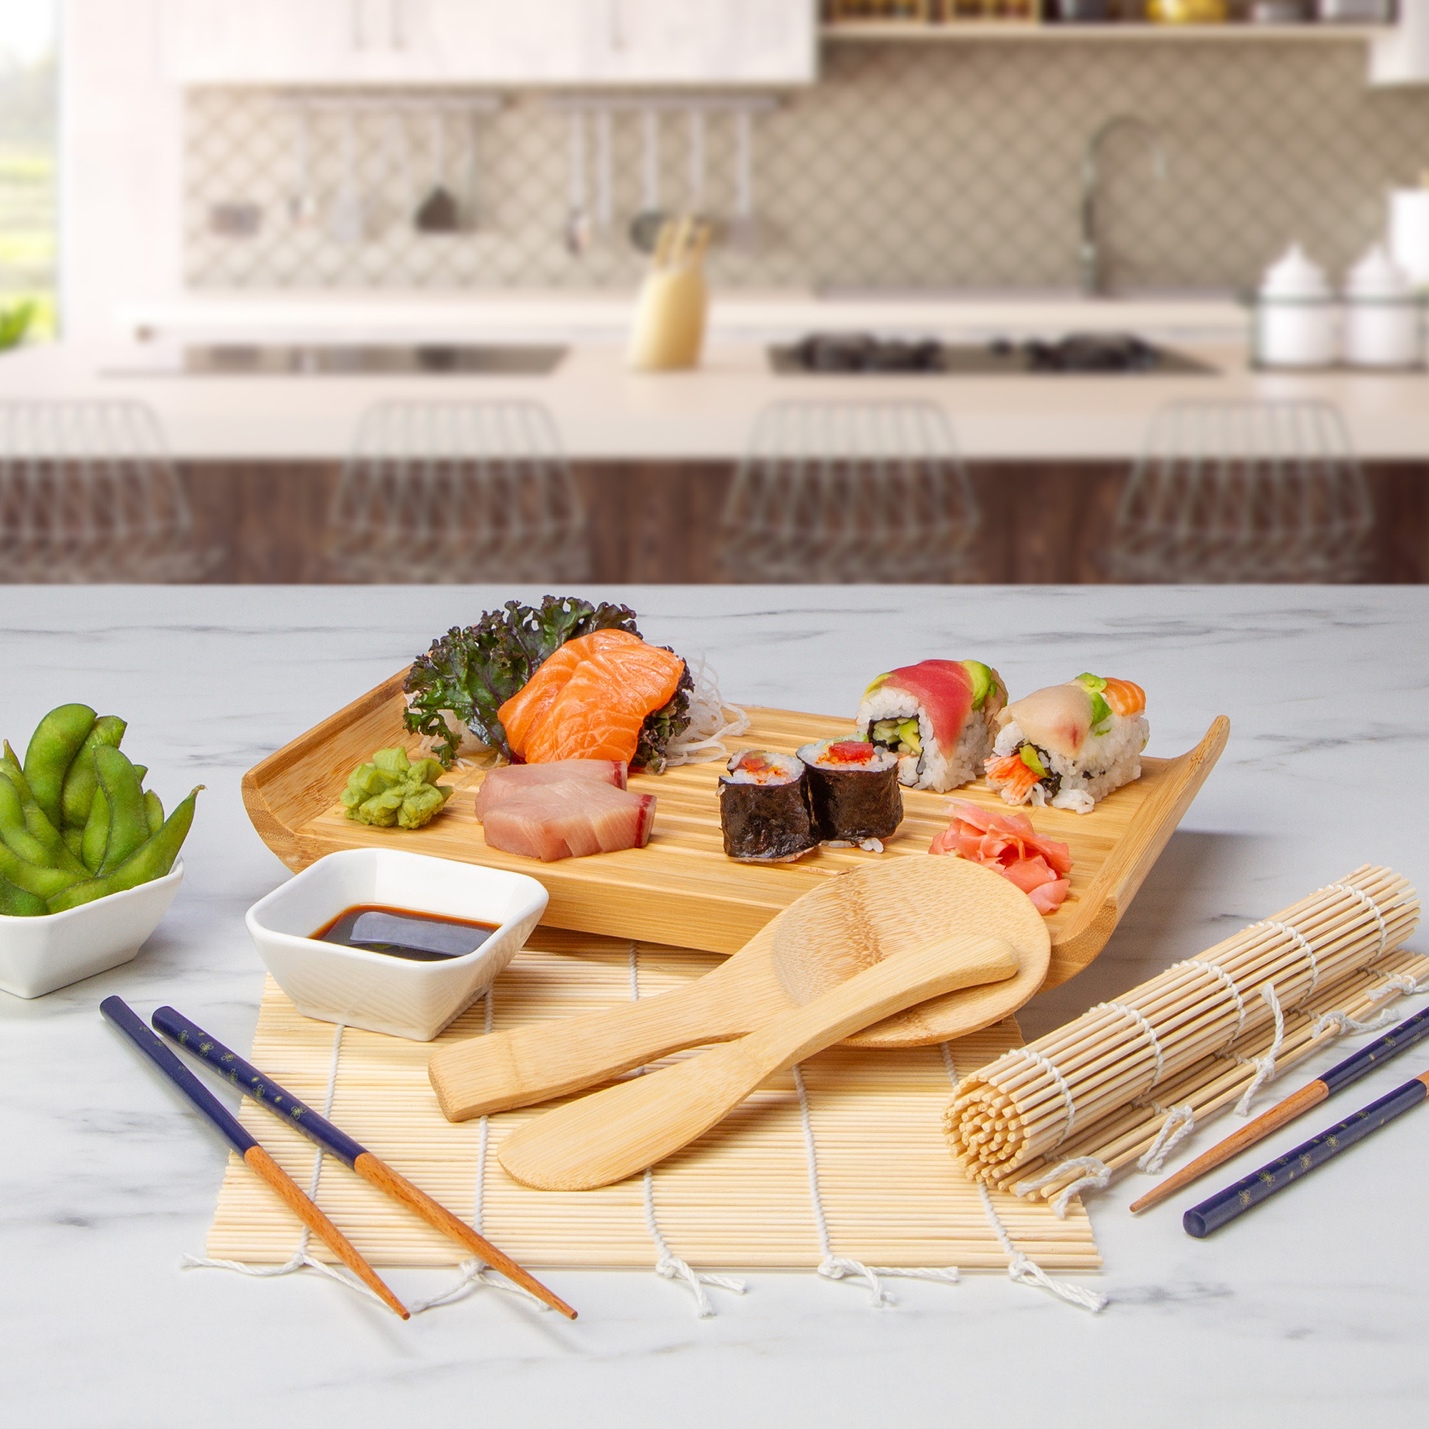 Bamboo Sushi Making Kit by Home Direct - FabFitFun